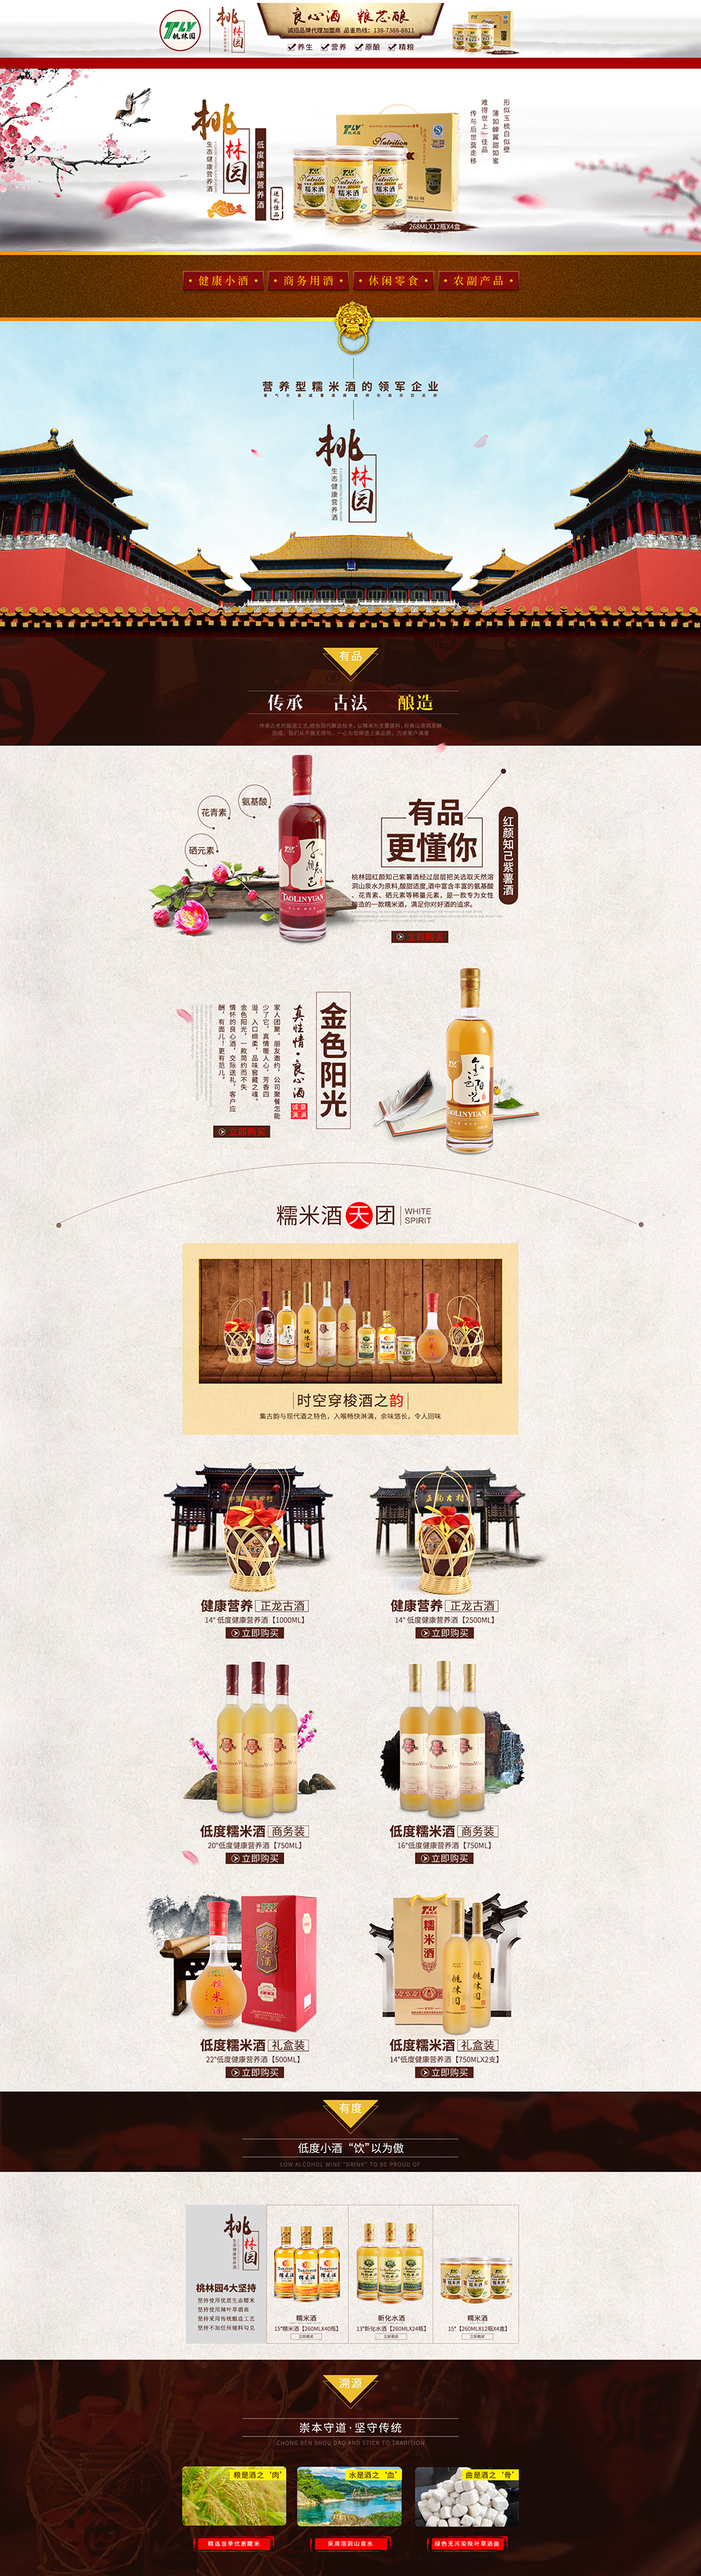 桃林園糯米酒品牌電商頁面設計圖1